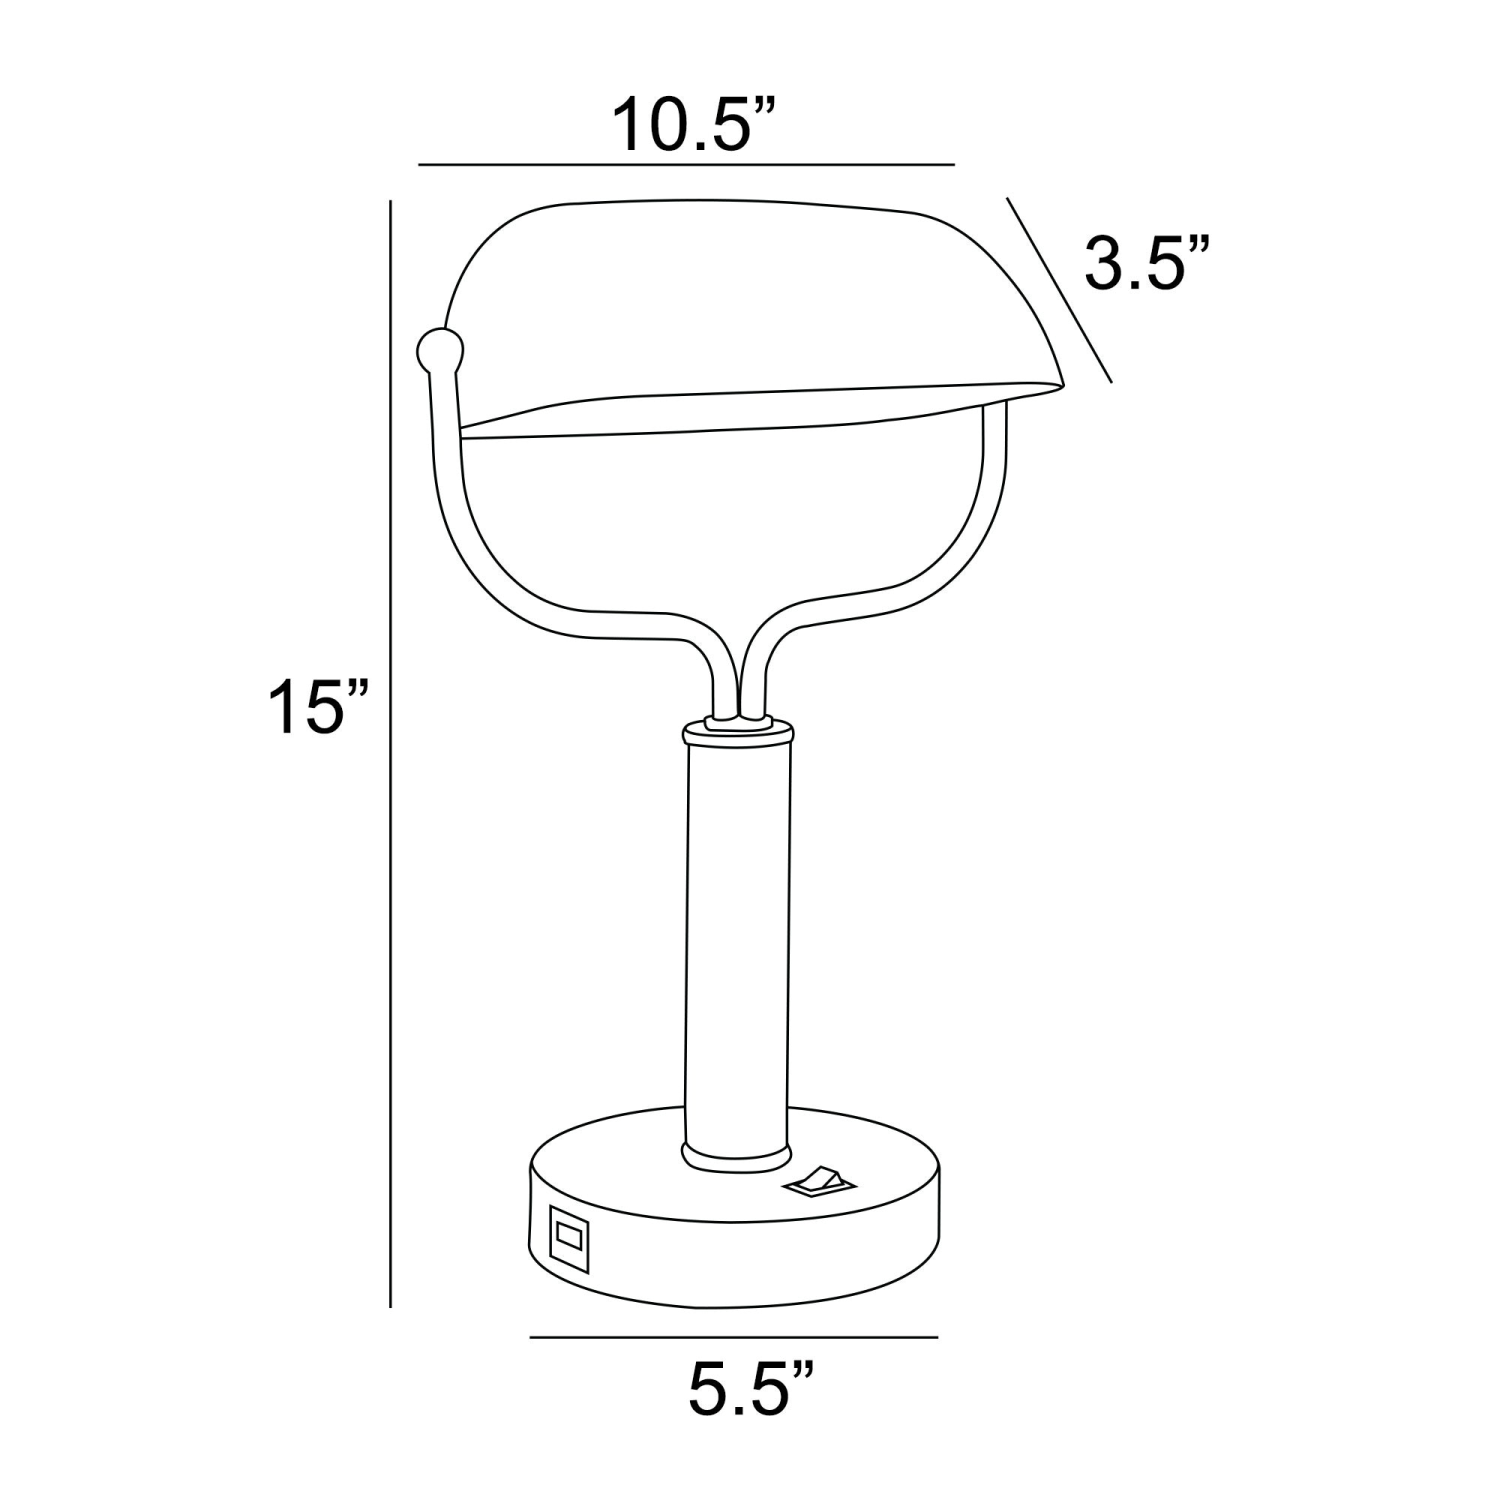 Yanni Desk Lamp Measurements